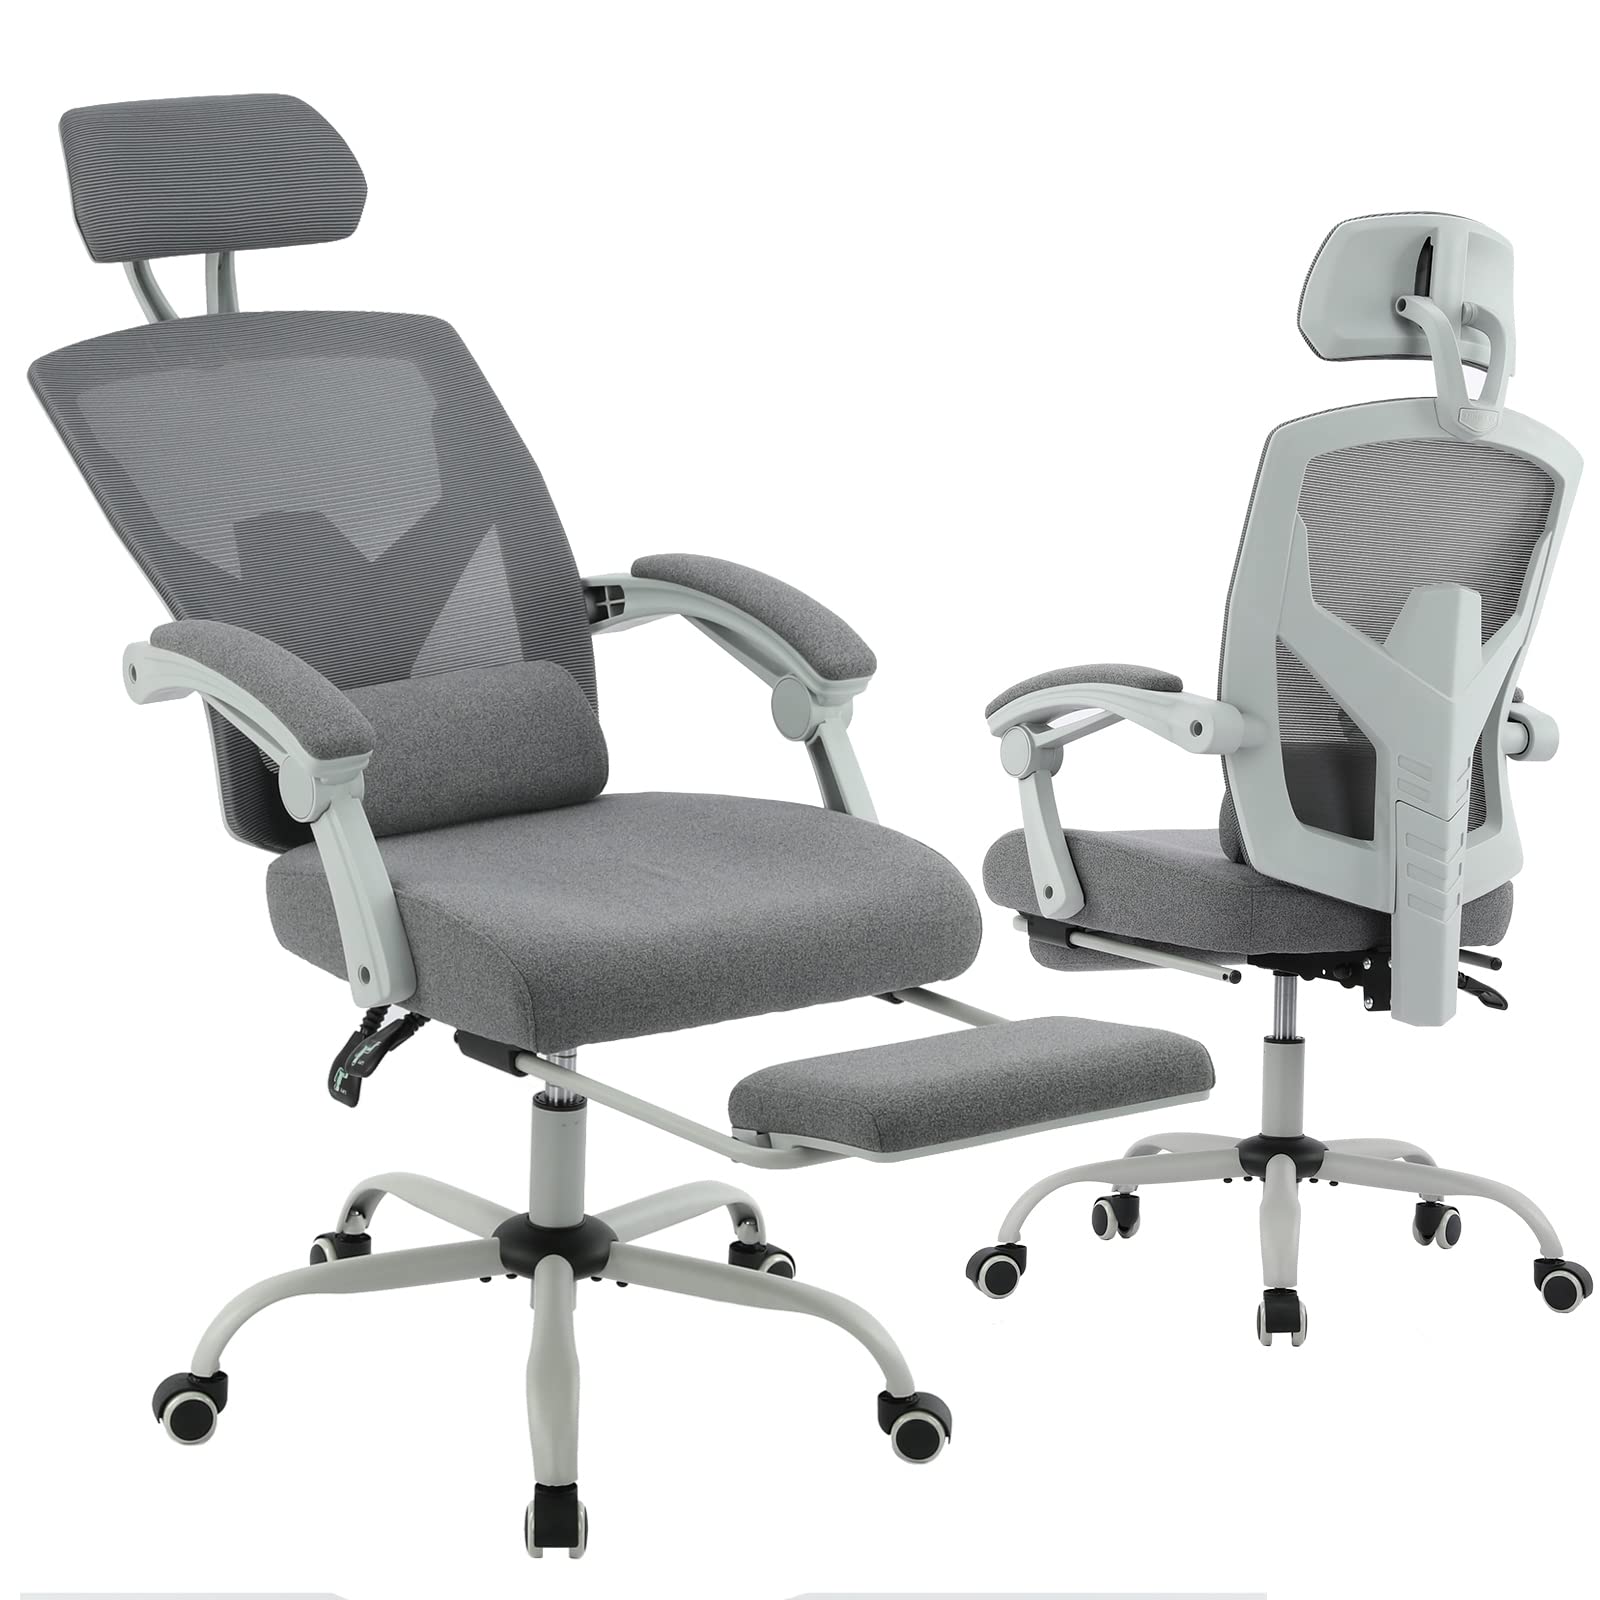 史低价！edx  高背 可躺  办公/电脑椅，原价$125.99，现仅售$99.99，免运费！多色可选！